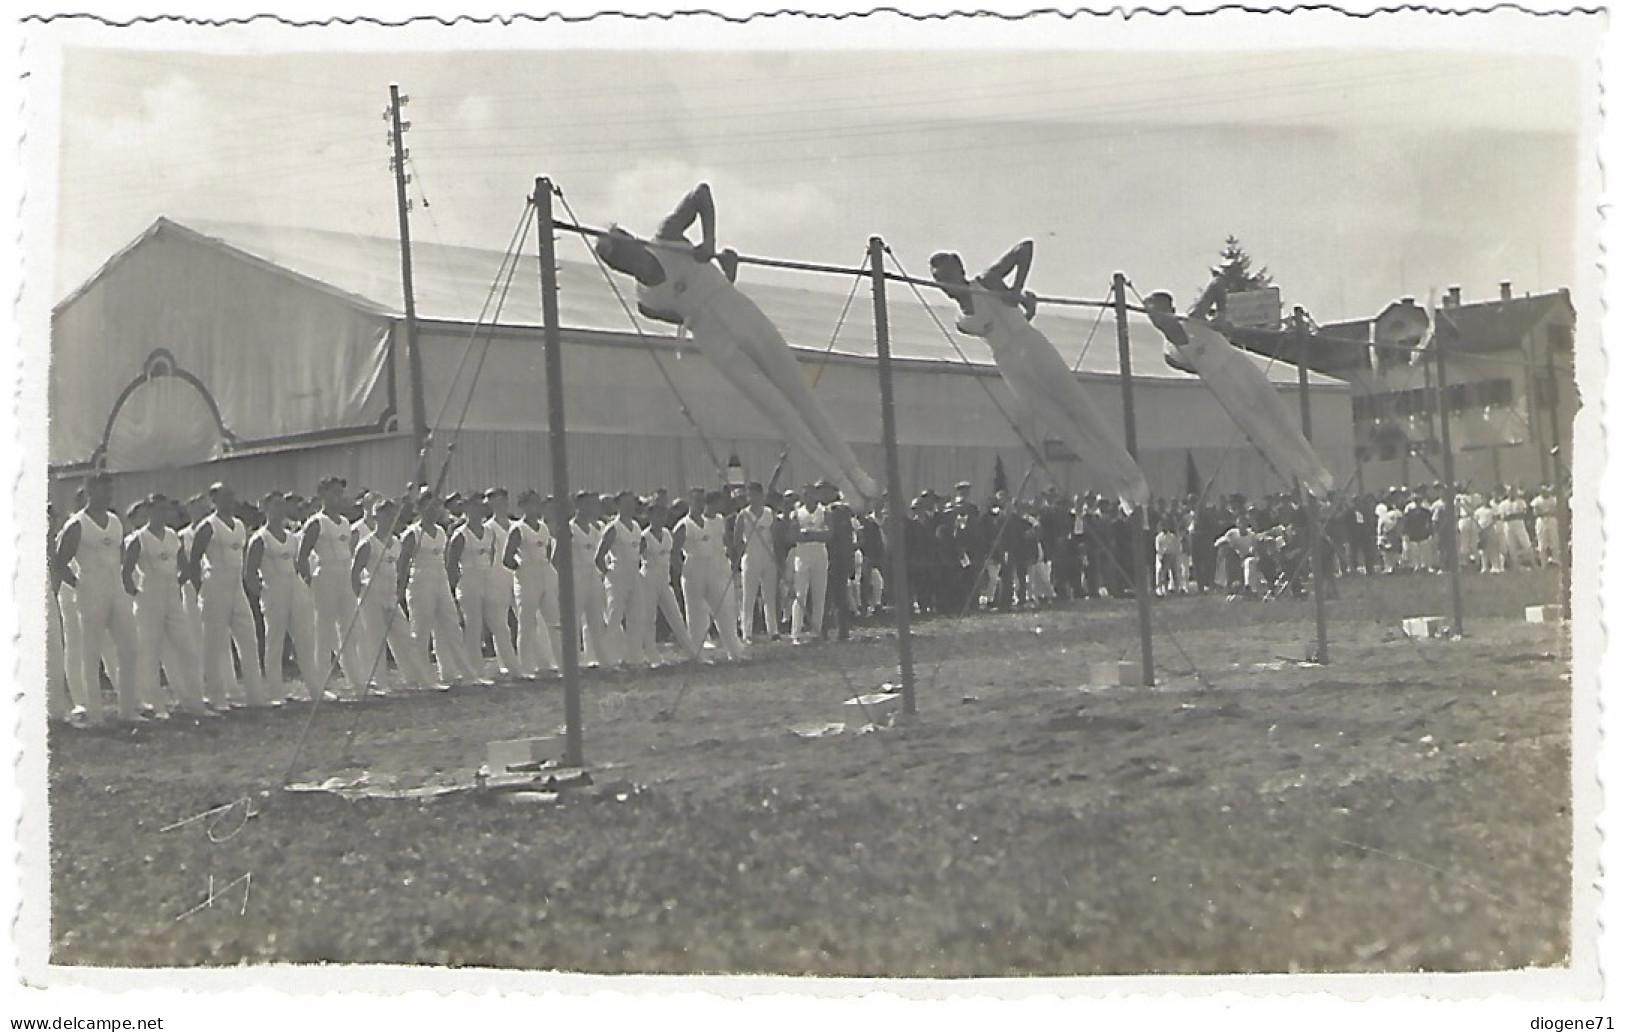 28. Zürcher Kant. Turnfest Altstetten 1930 - Gymnastics